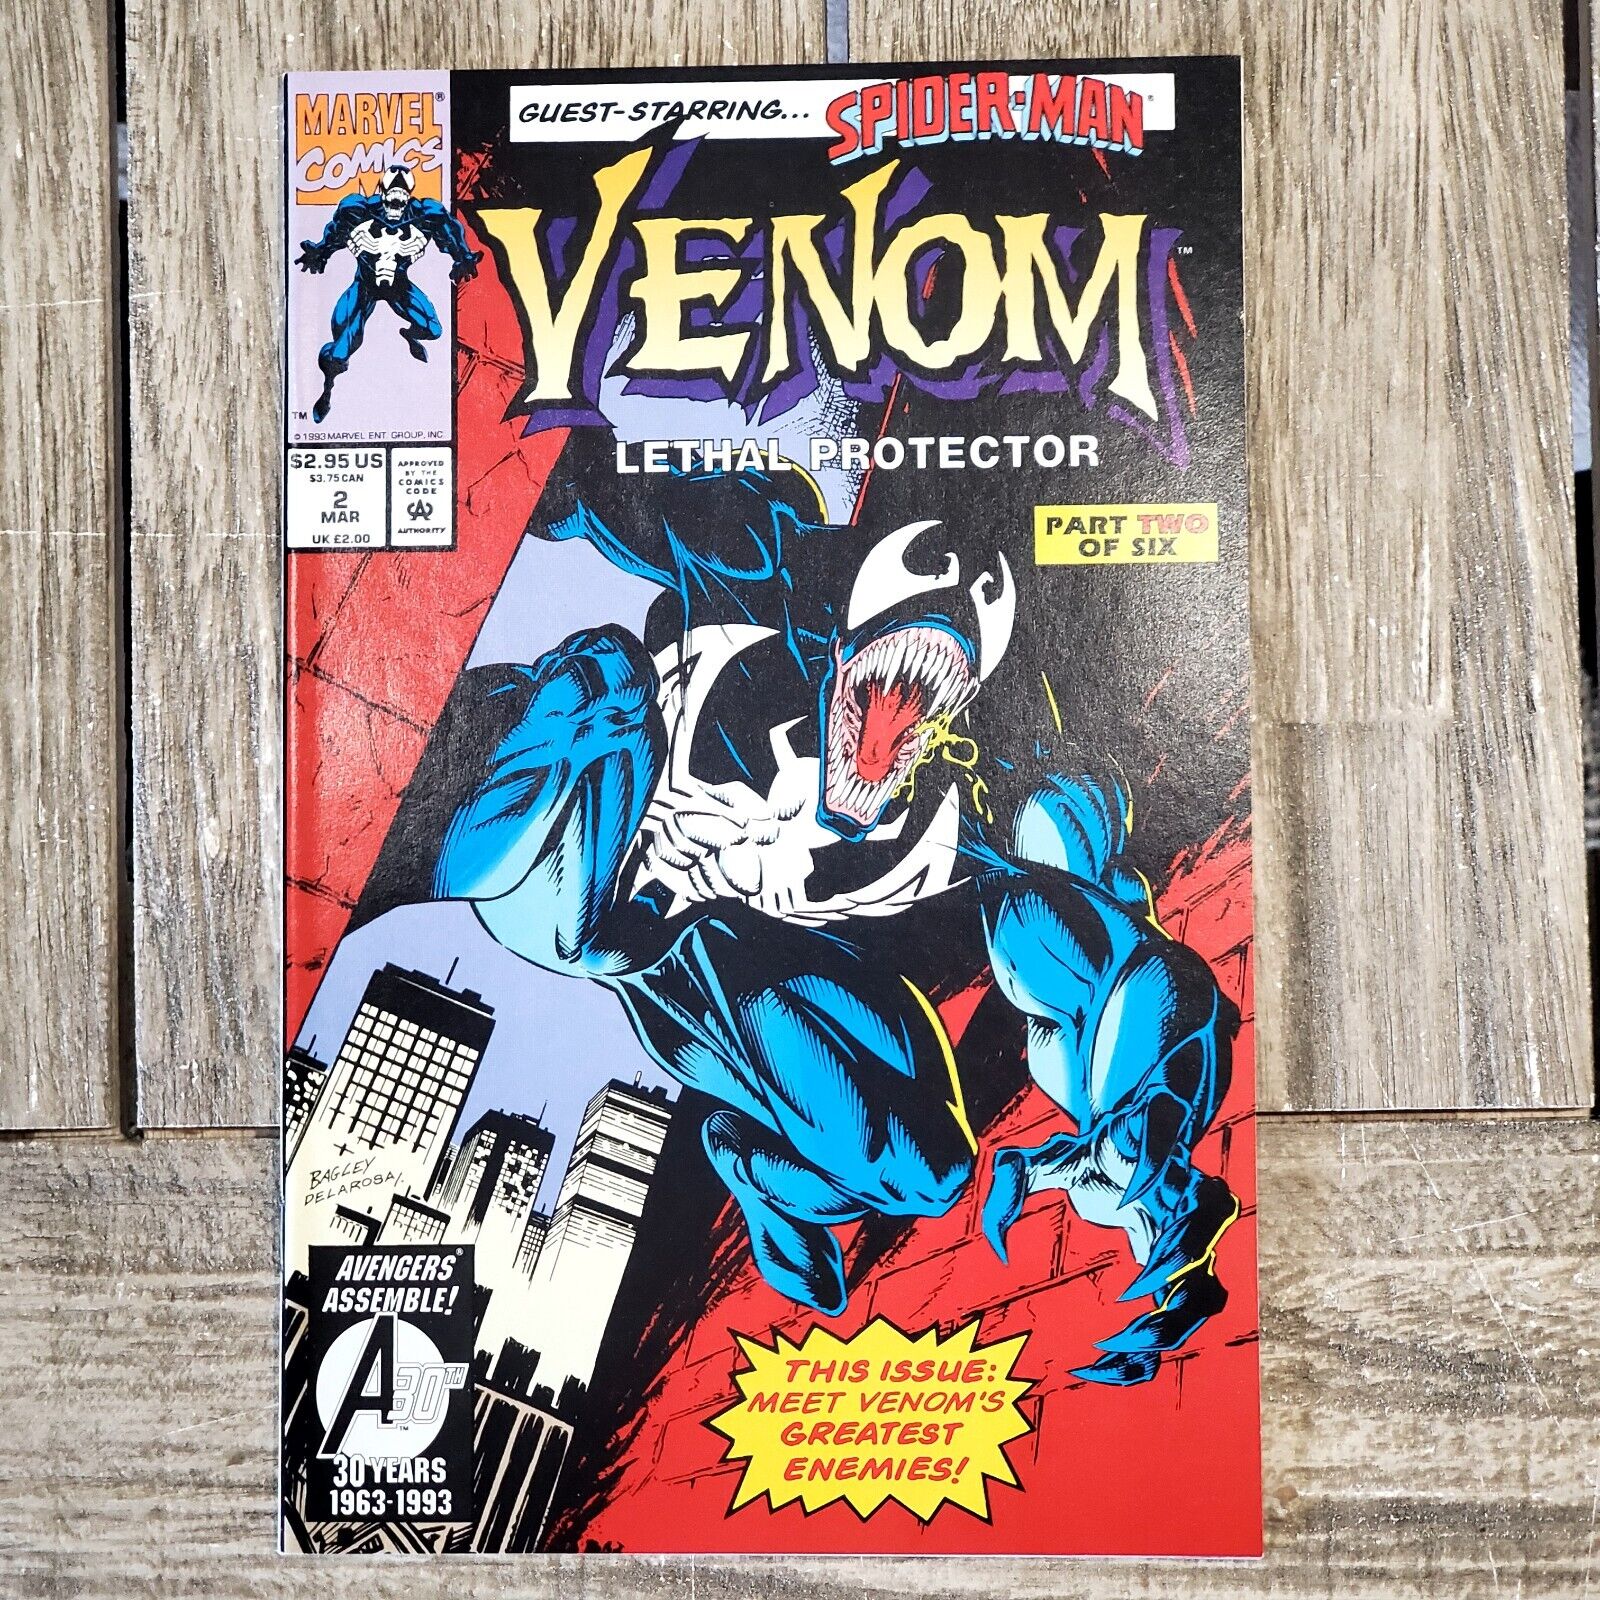 Venom: Lethal Protectors #2